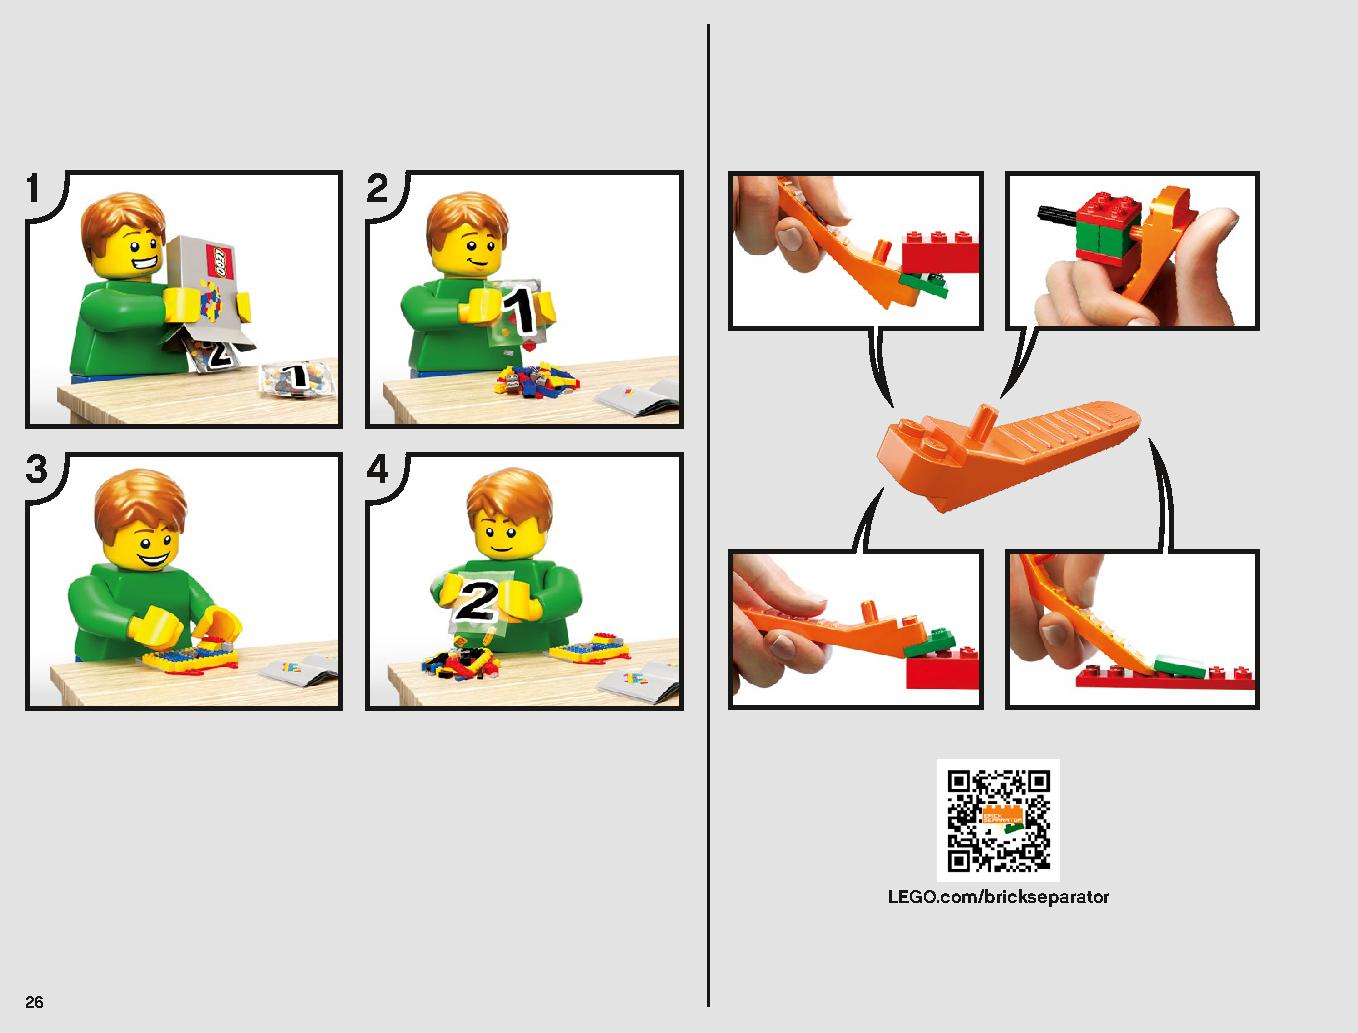 タンティブIV™ 75244 レゴの商品情報 レゴの説明書・組立方法 26 page